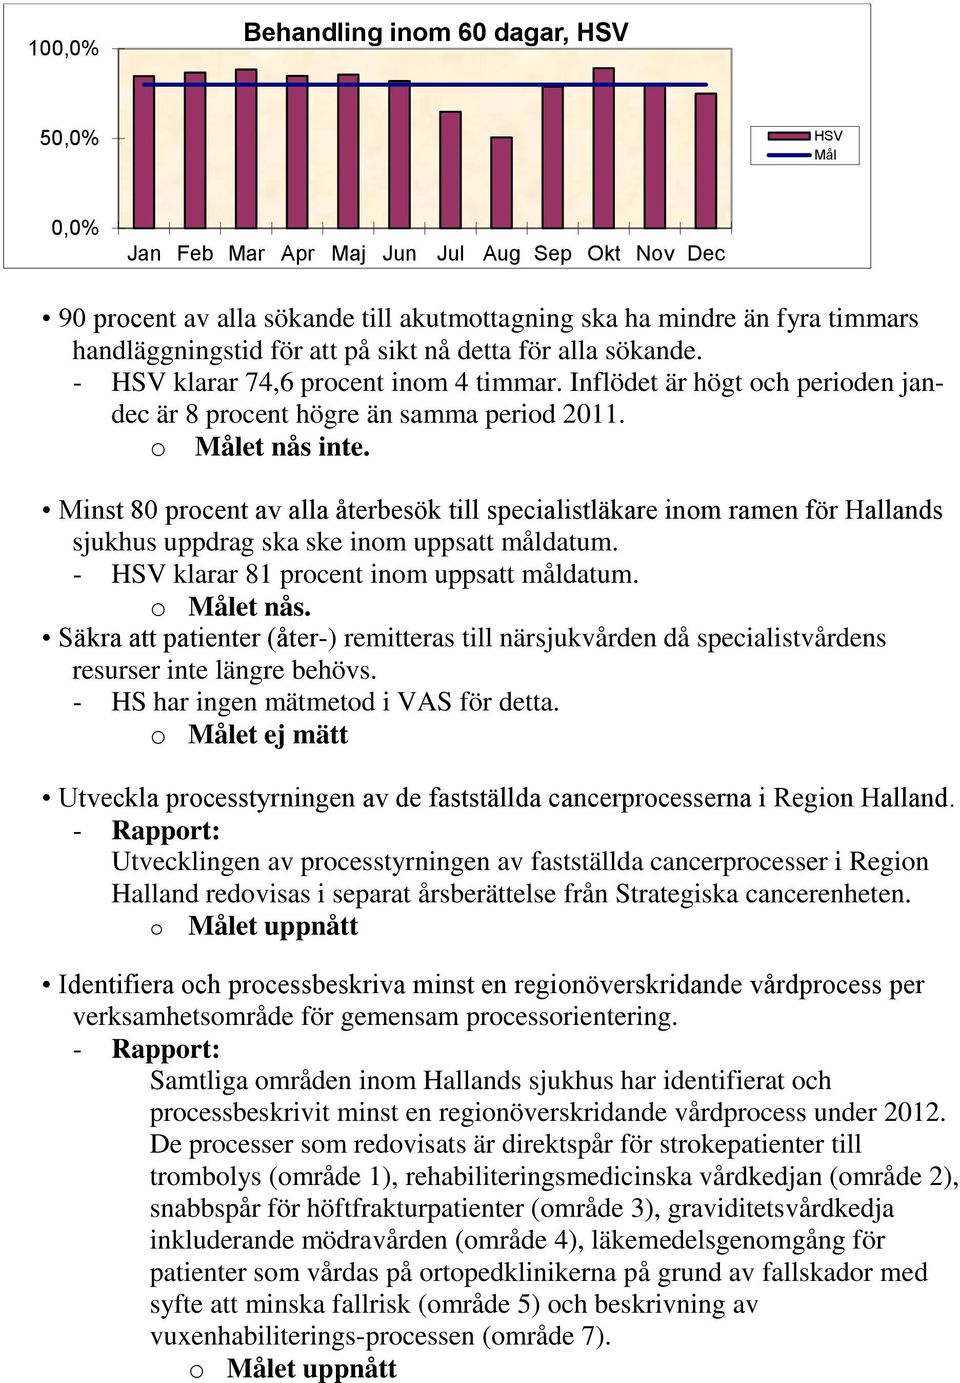 Minst 80 procent av alla återbesök till specialistläkare inom ramen för Hallands sjukhus uppdrag ska ske inom uppsatt måldatum. - HSV klarar 81 procent inom uppsatt måldatum. o Målet nås.